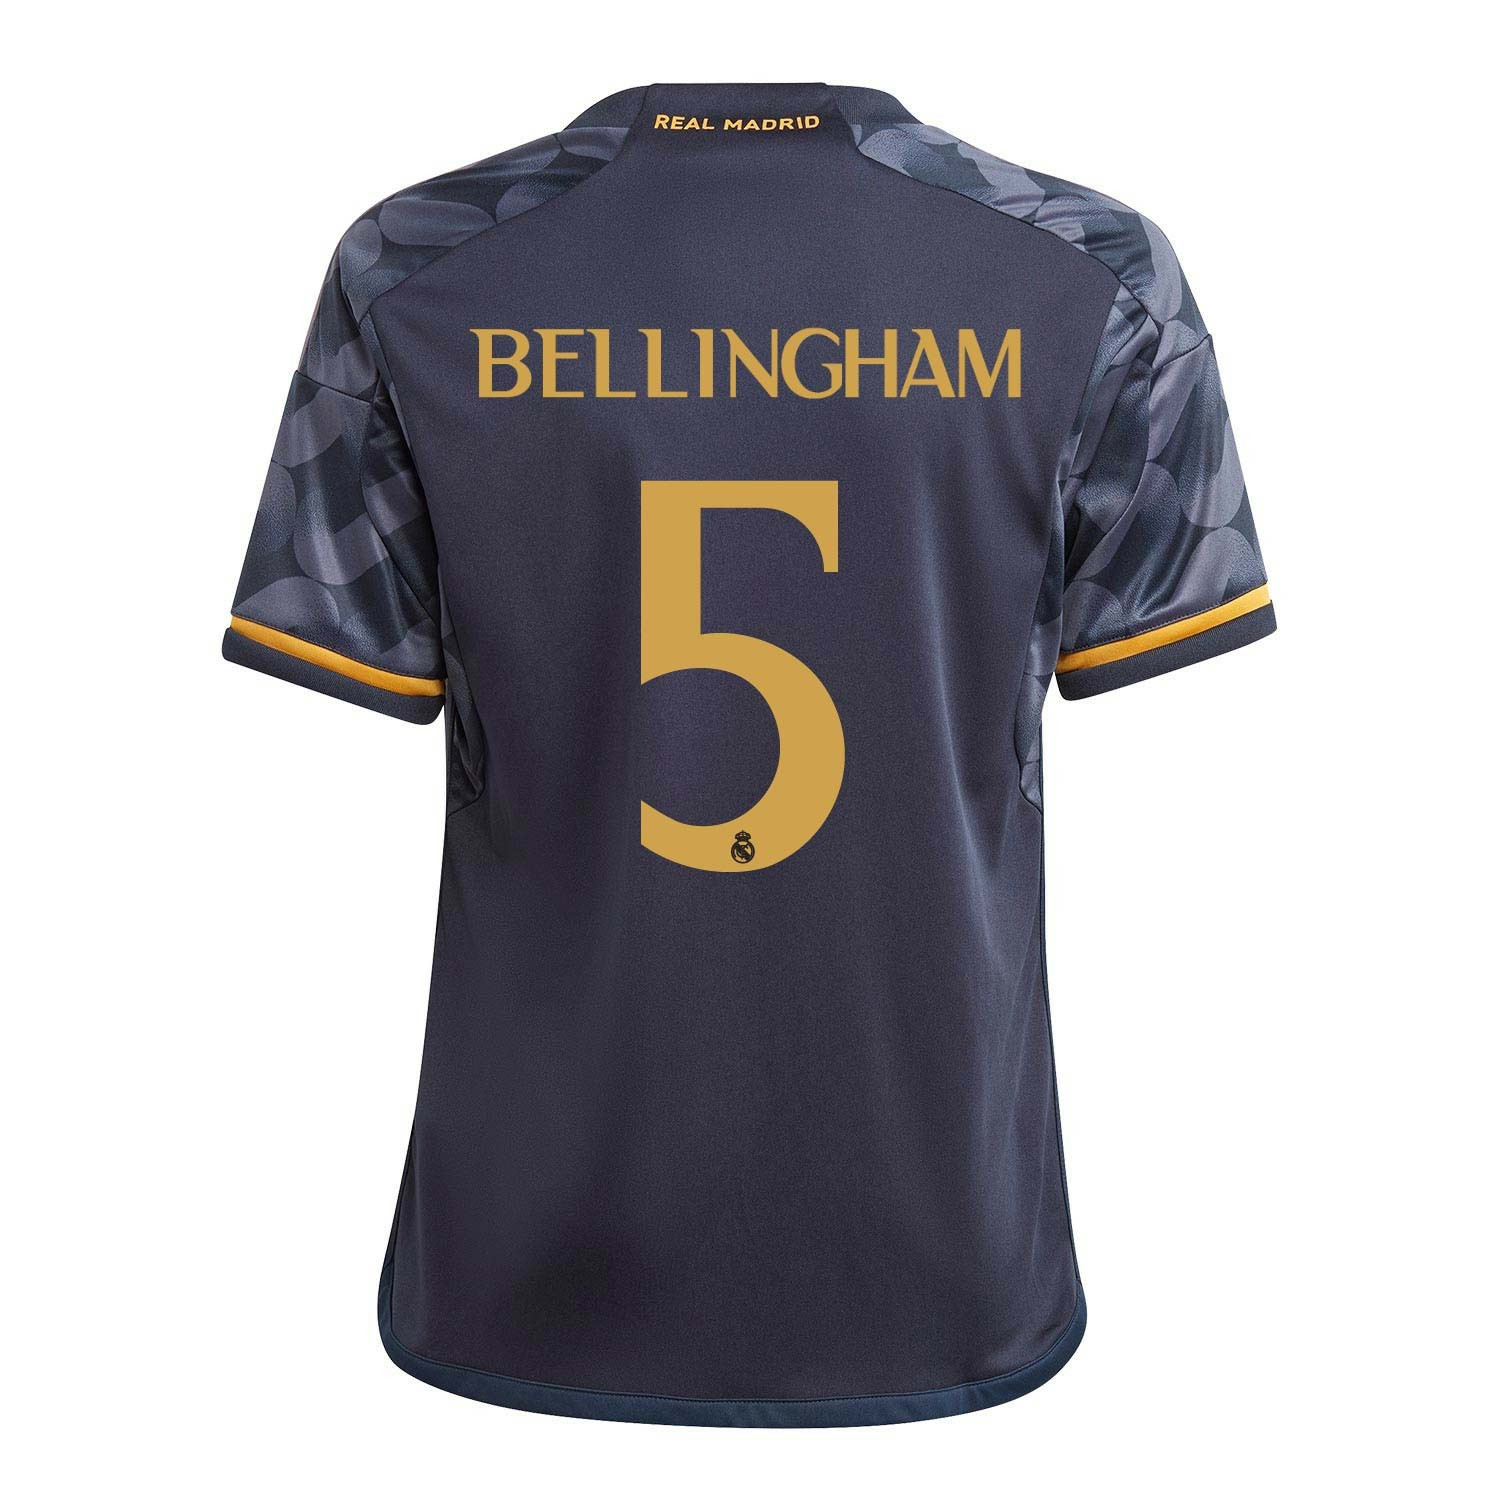 Bellingham hace de oro al Madrid; vende más camisetas que Mbappé y Haaland  